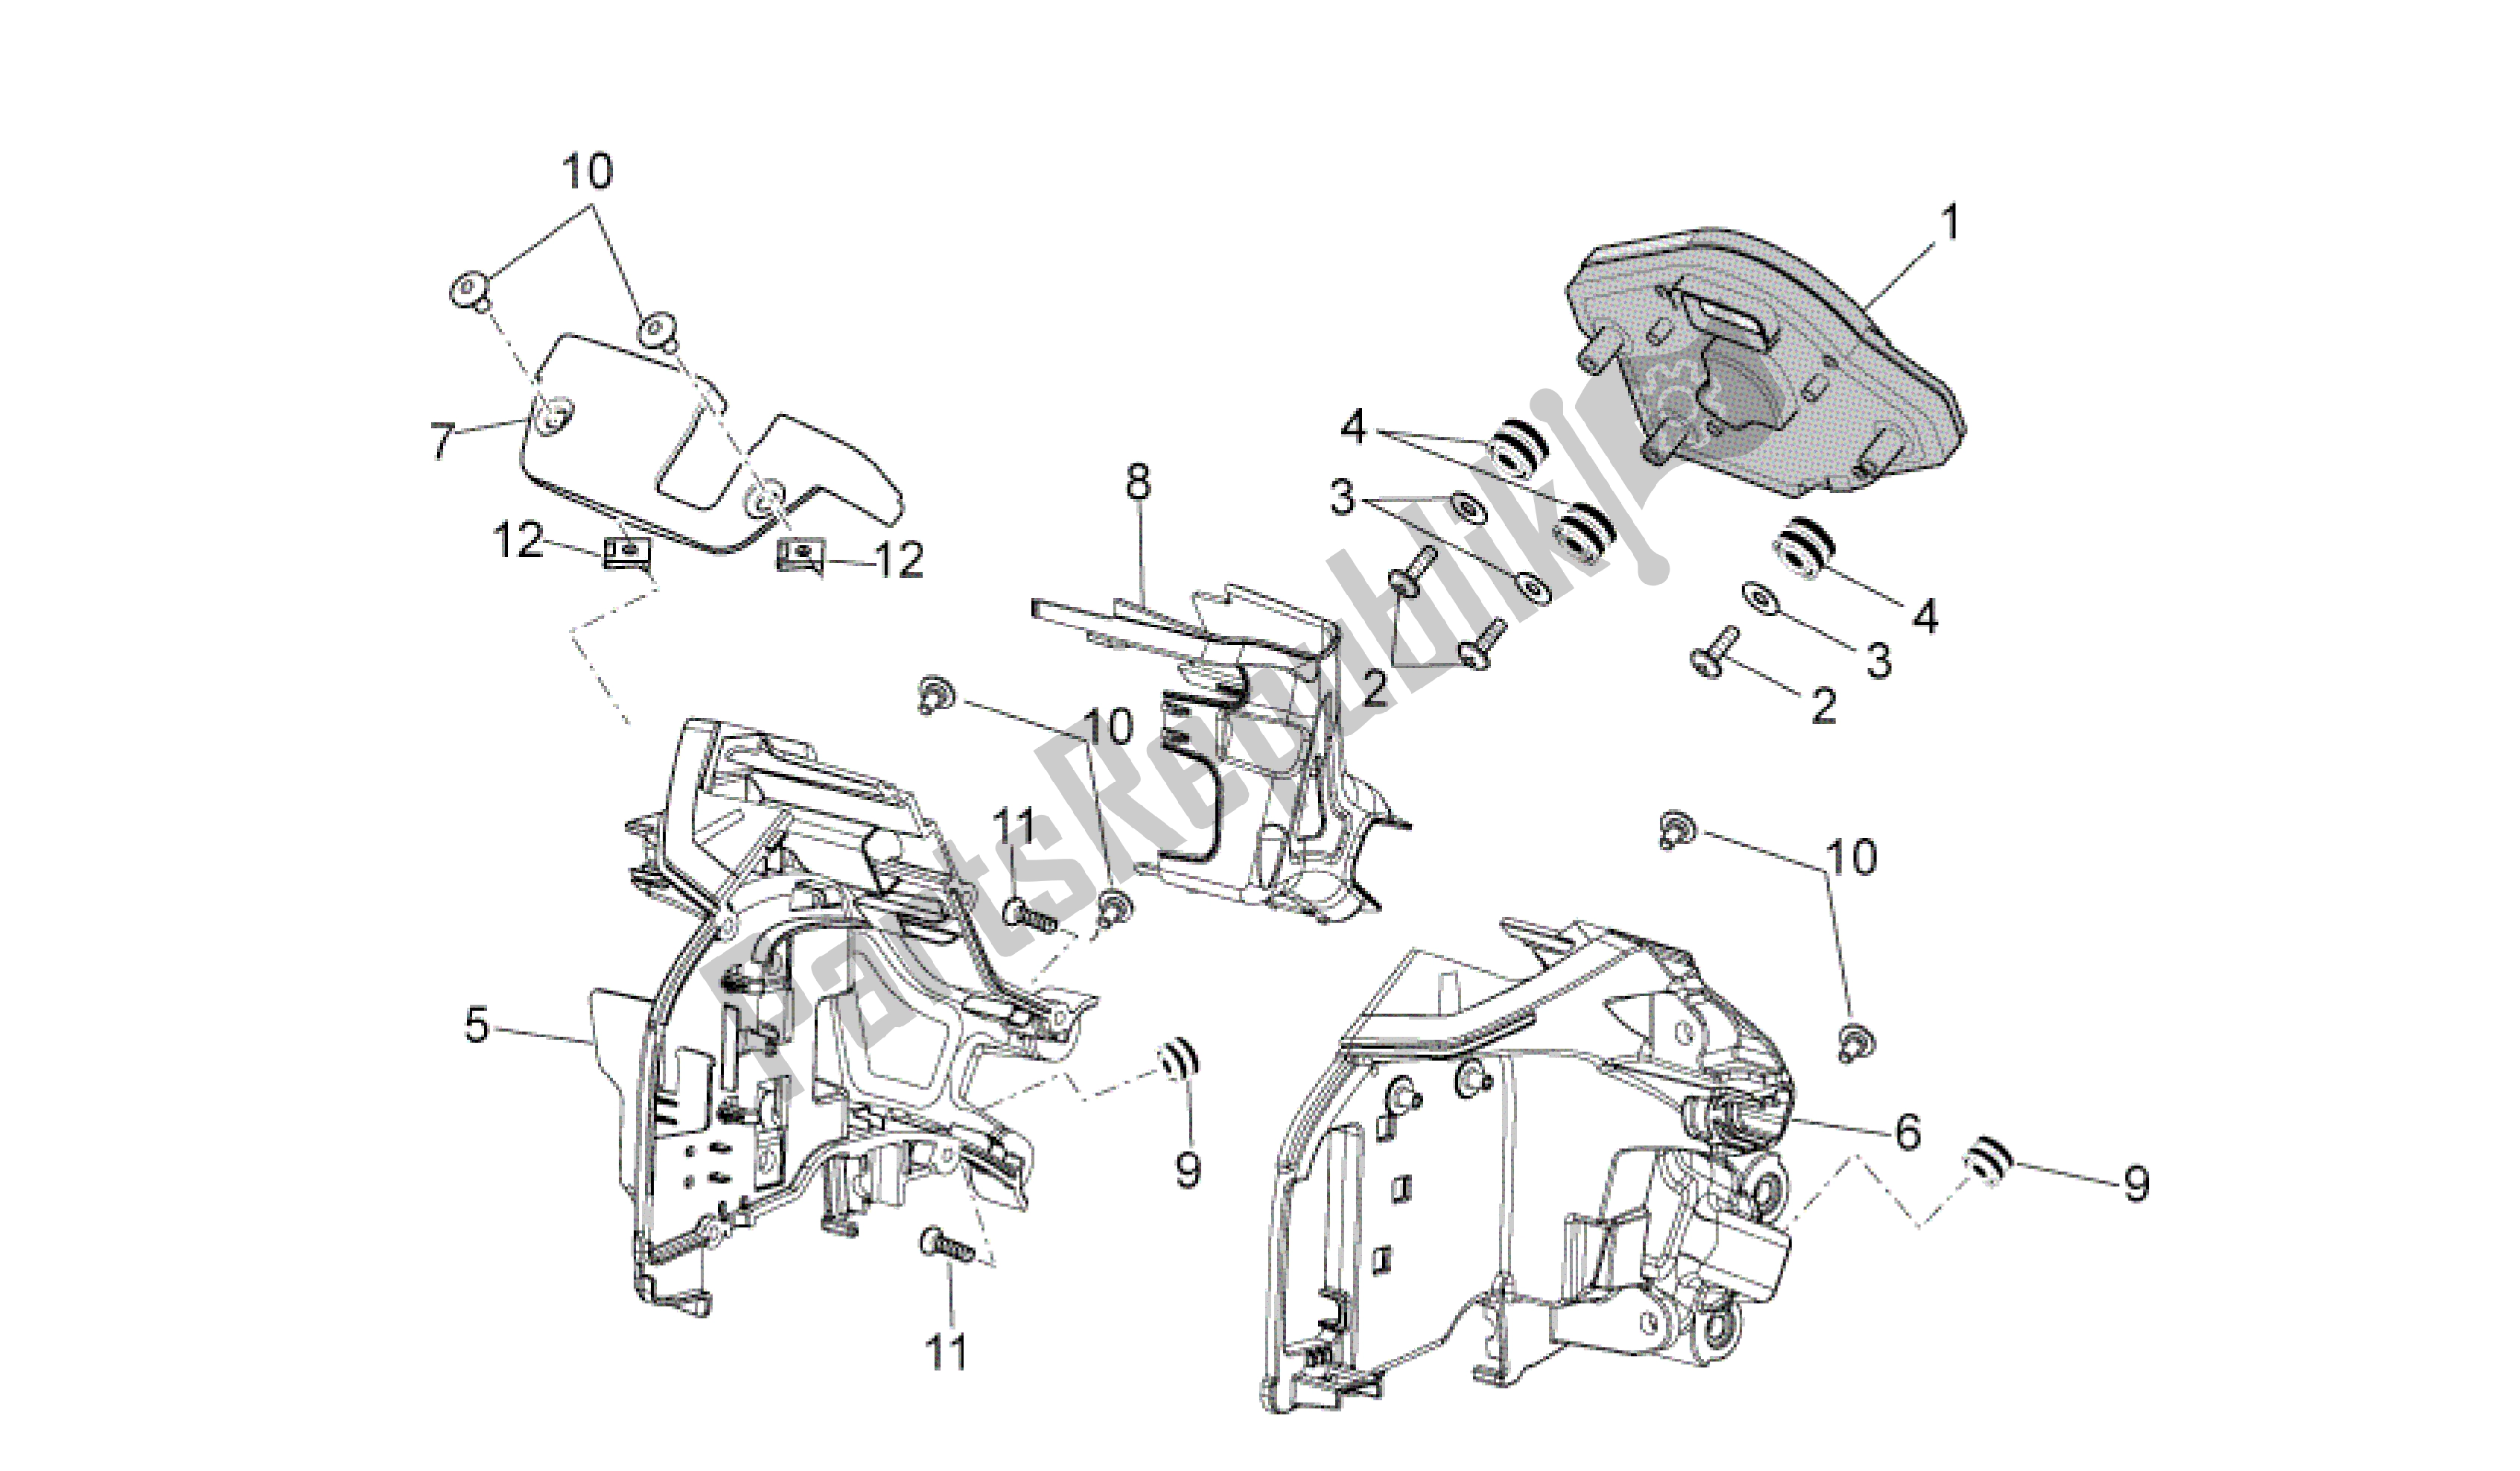 All parts for the Dashboard of the Aprilia RSV4 Tuono V4 R Aprc ABS 1000 2014